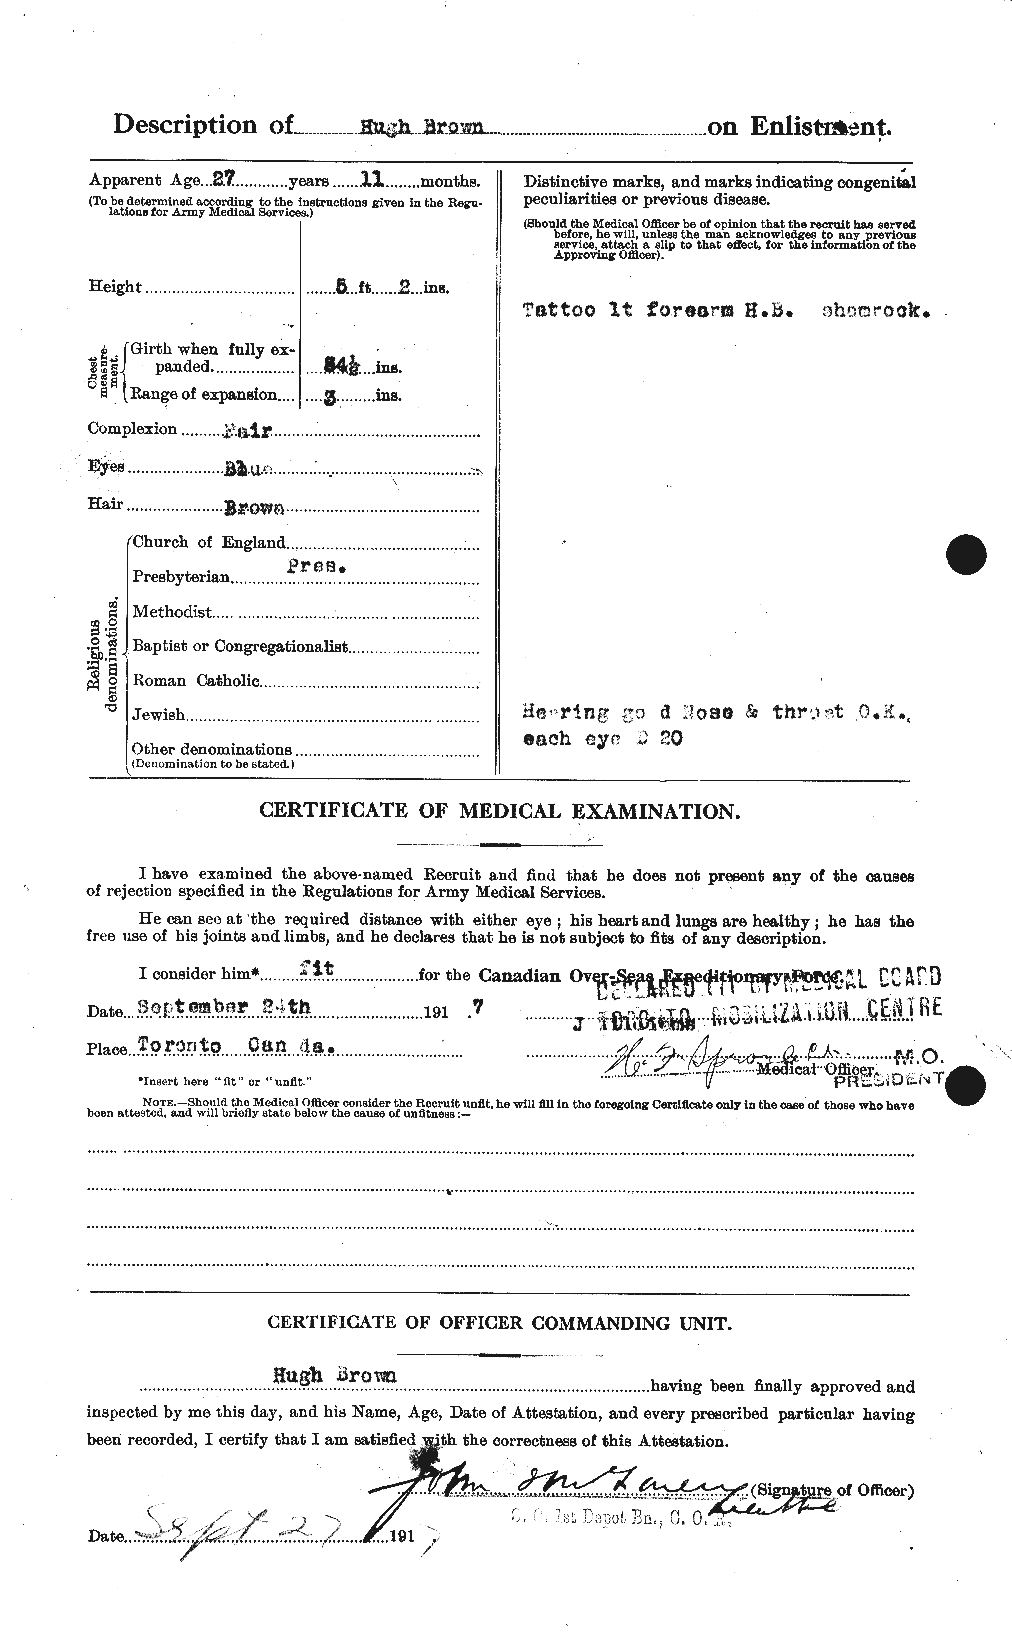 Dossiers du Personnel de la Première Guerre mondiale - CEC 265636b